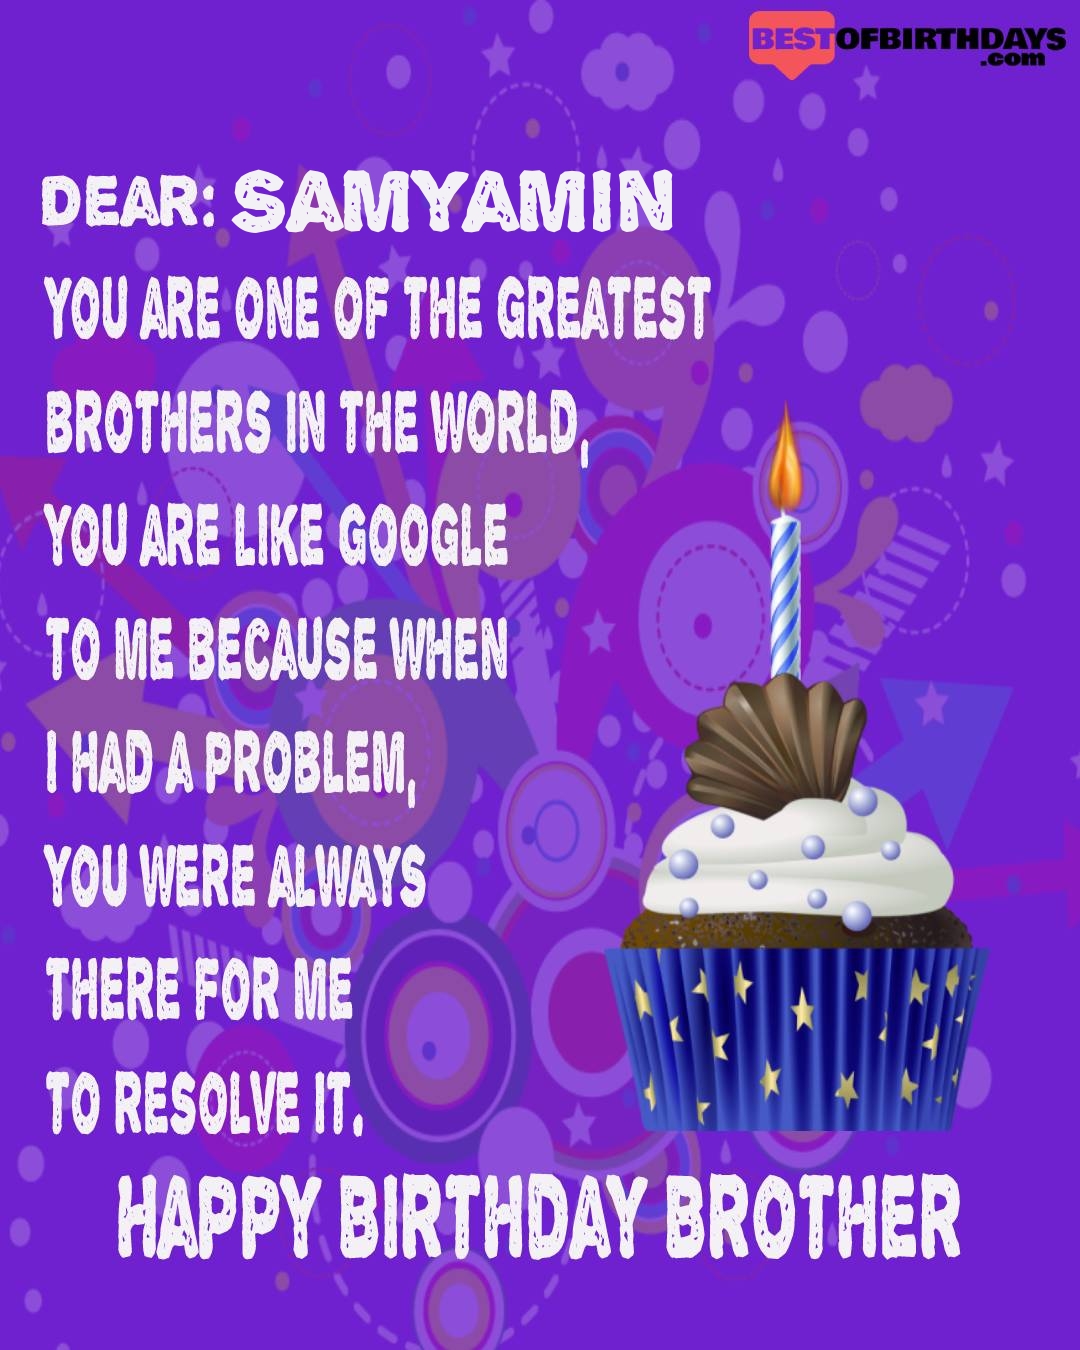 Happy birthday samyamin bhai brother bro